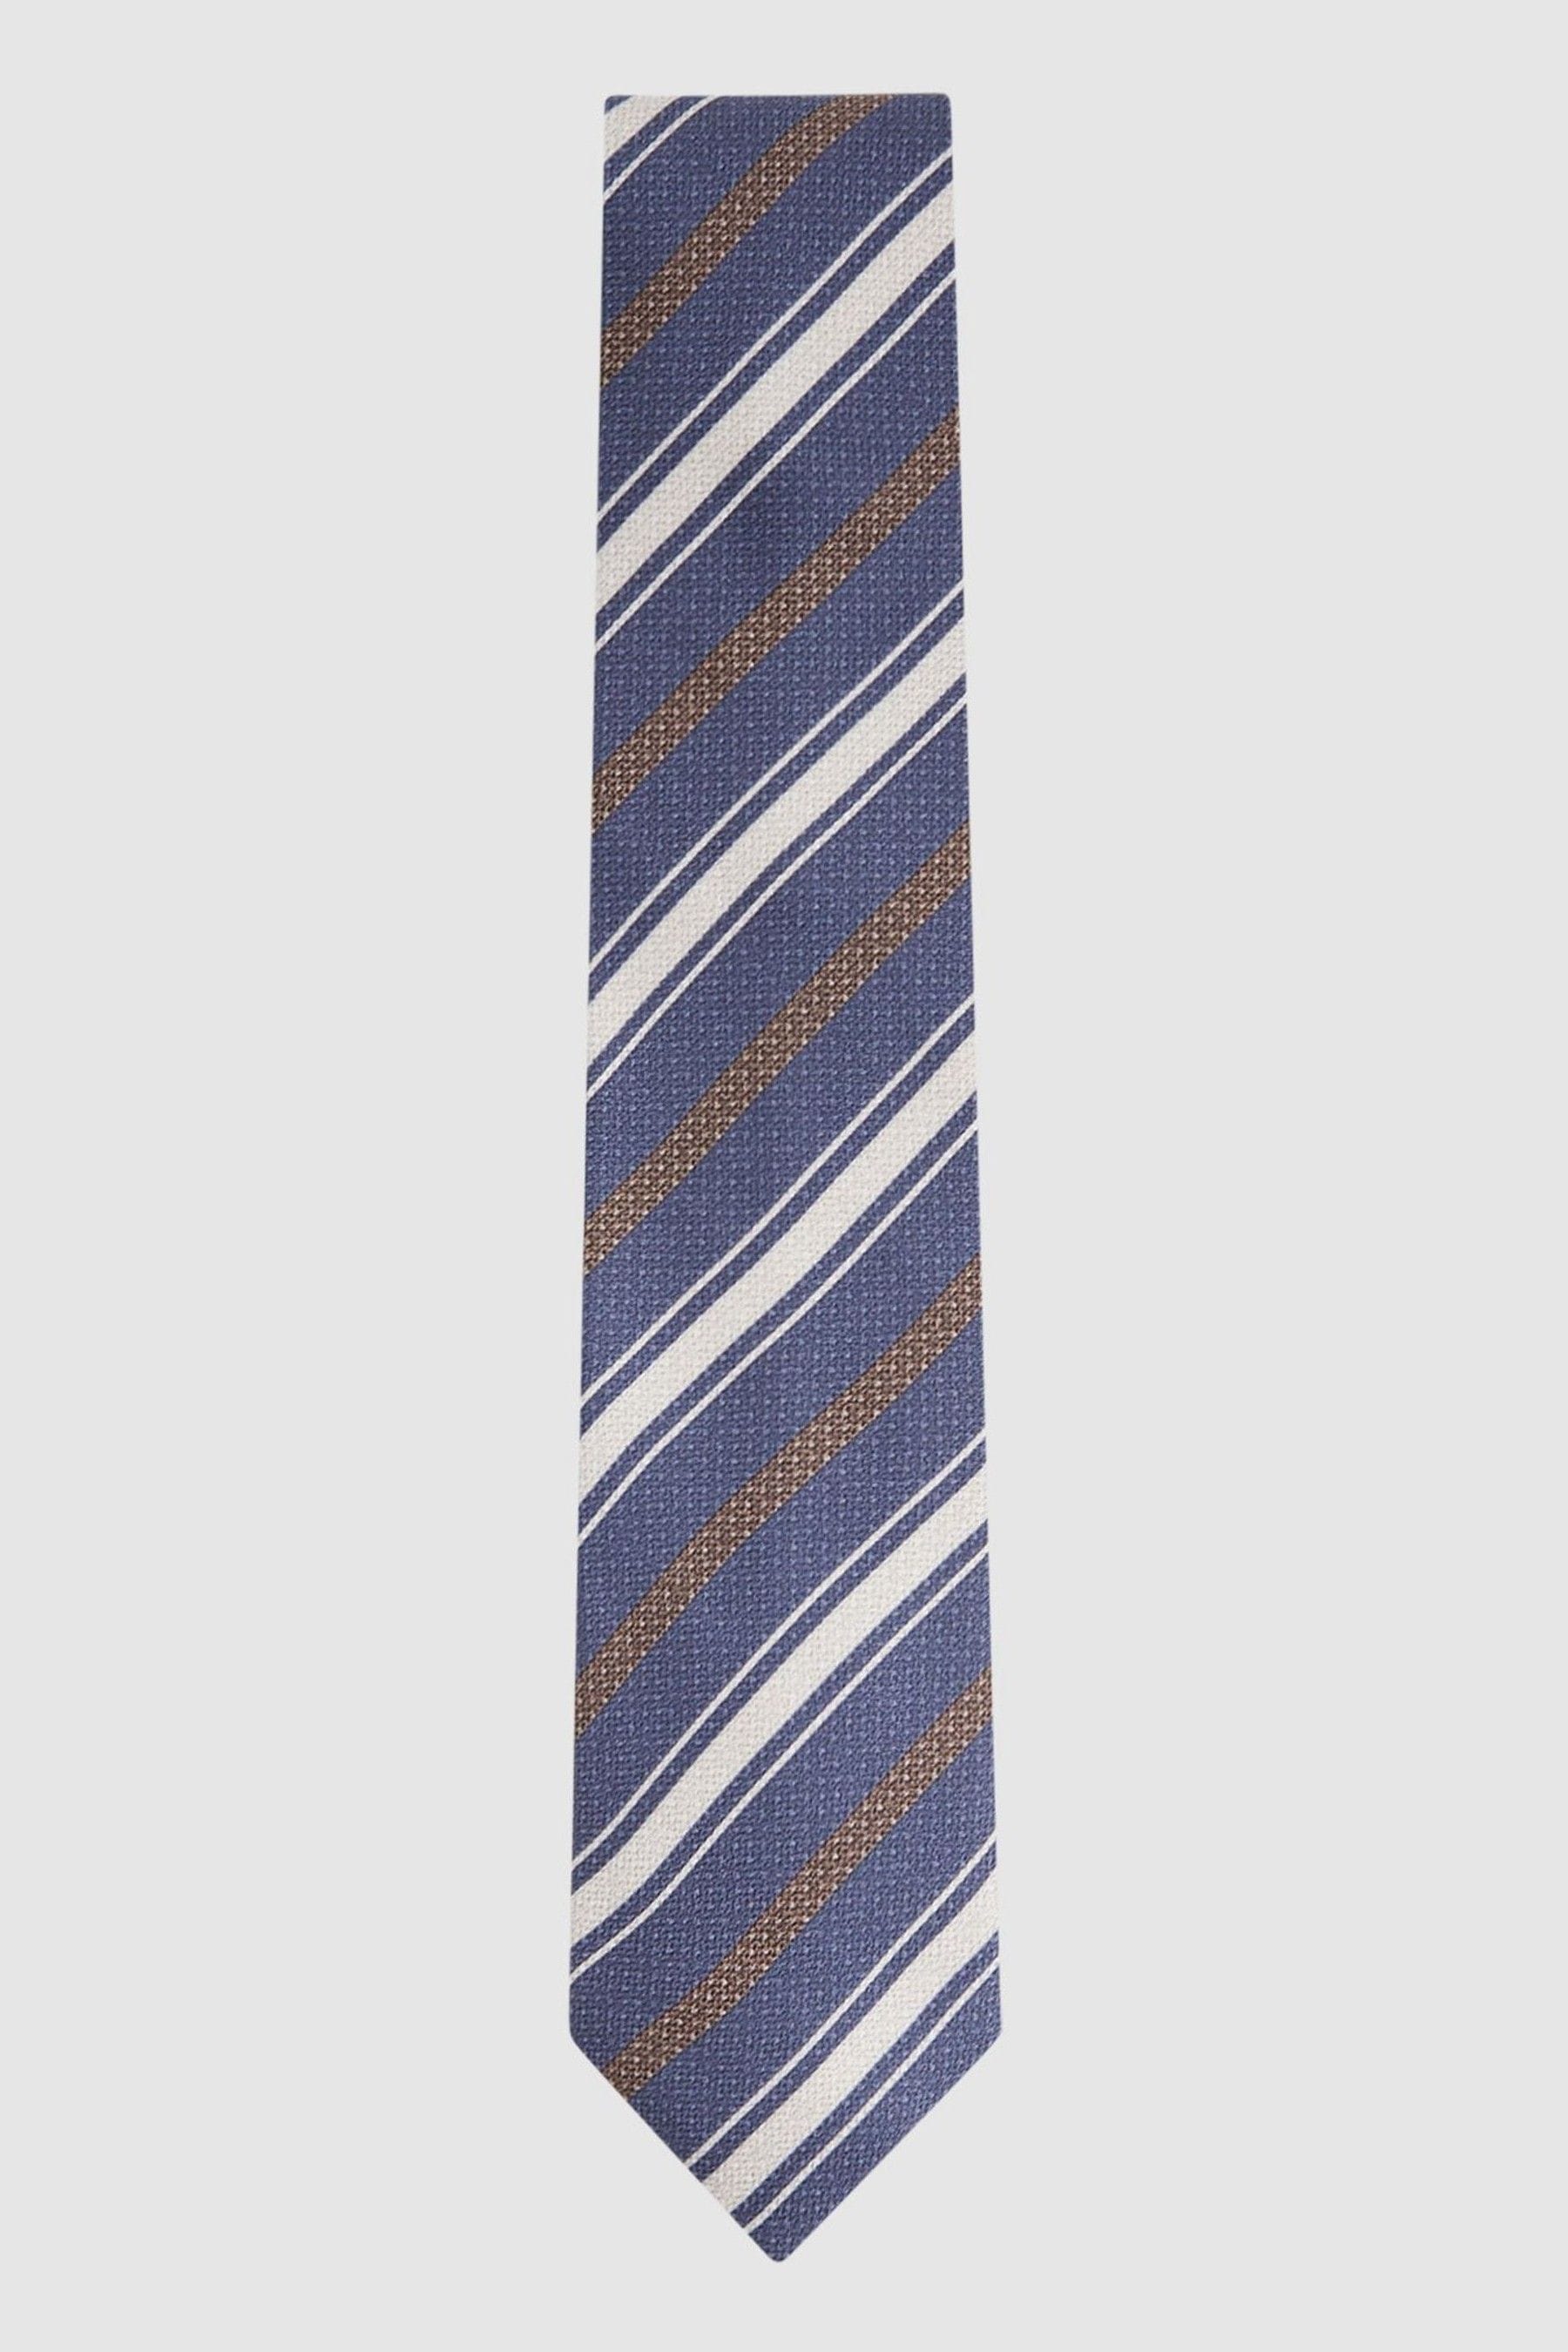 Reiss Duomo - Indigo Silk Striped Tie, In Multi